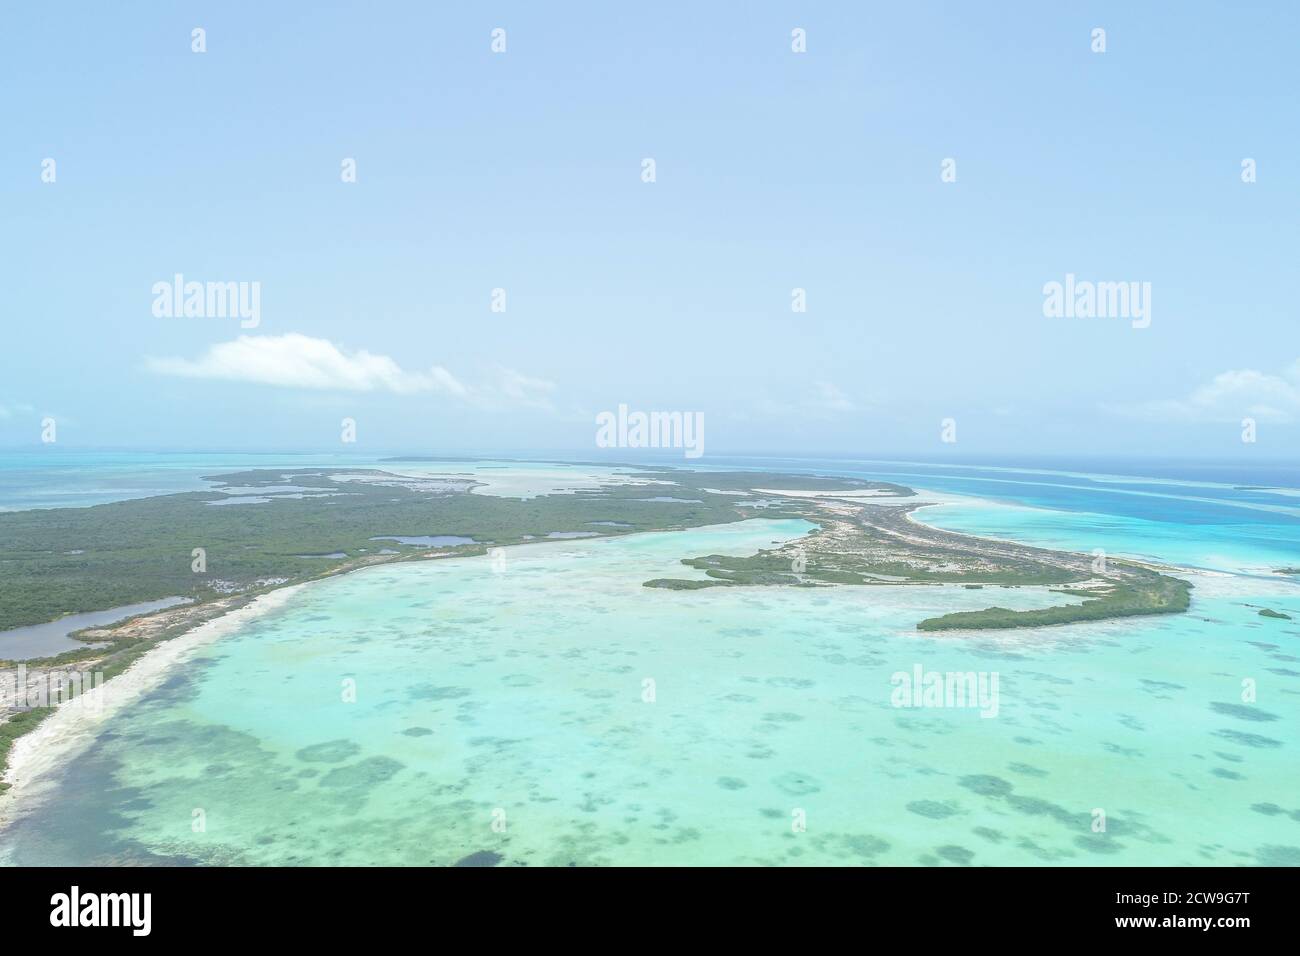 Vue aérienne de l'île des Caraïbes dans le parc national de Los Roques Au Venezuela Banque D'Images